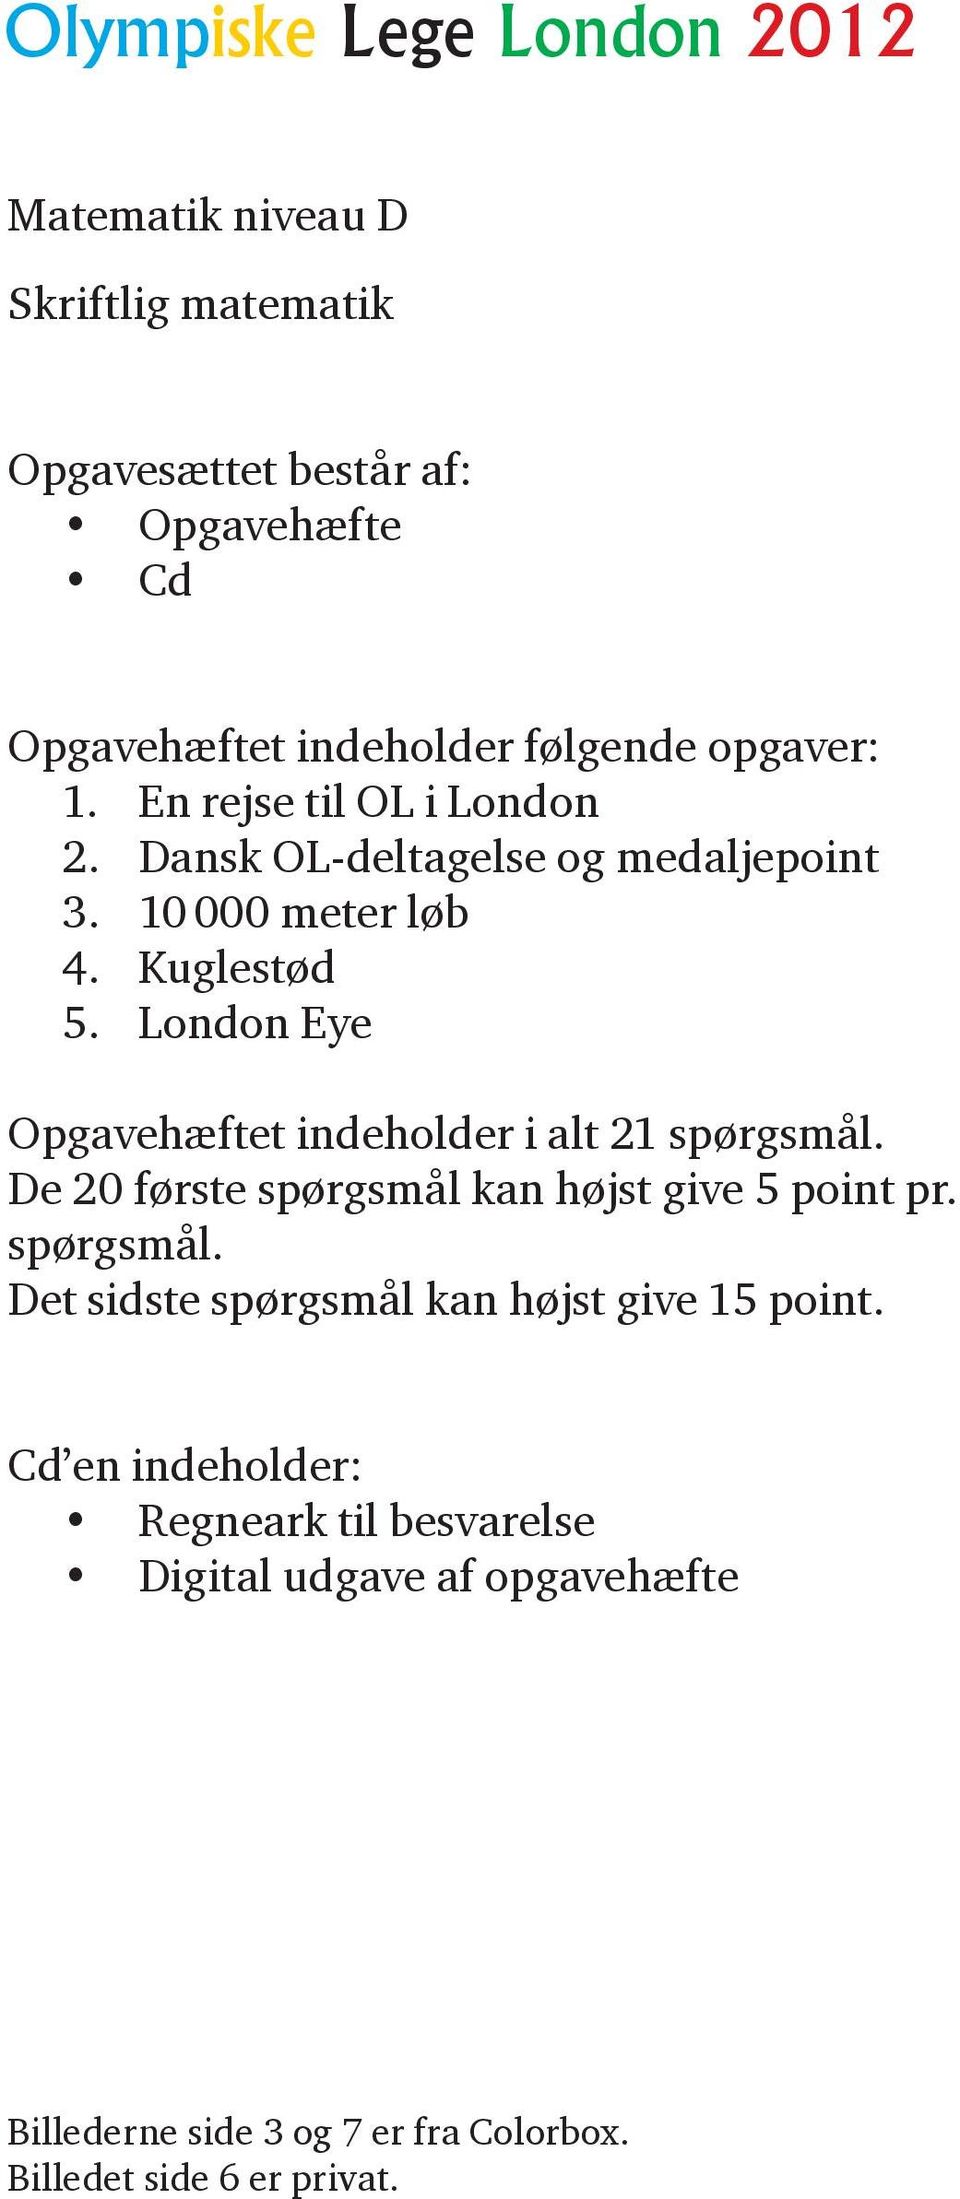 London Eye Opgavehæftet indeholder i alt 21 spørgsmål. De 20 første spørgsmål kan højst give 5 point pr. spørgsmål. Det sidste spørgsmål kan højst give 15 point.